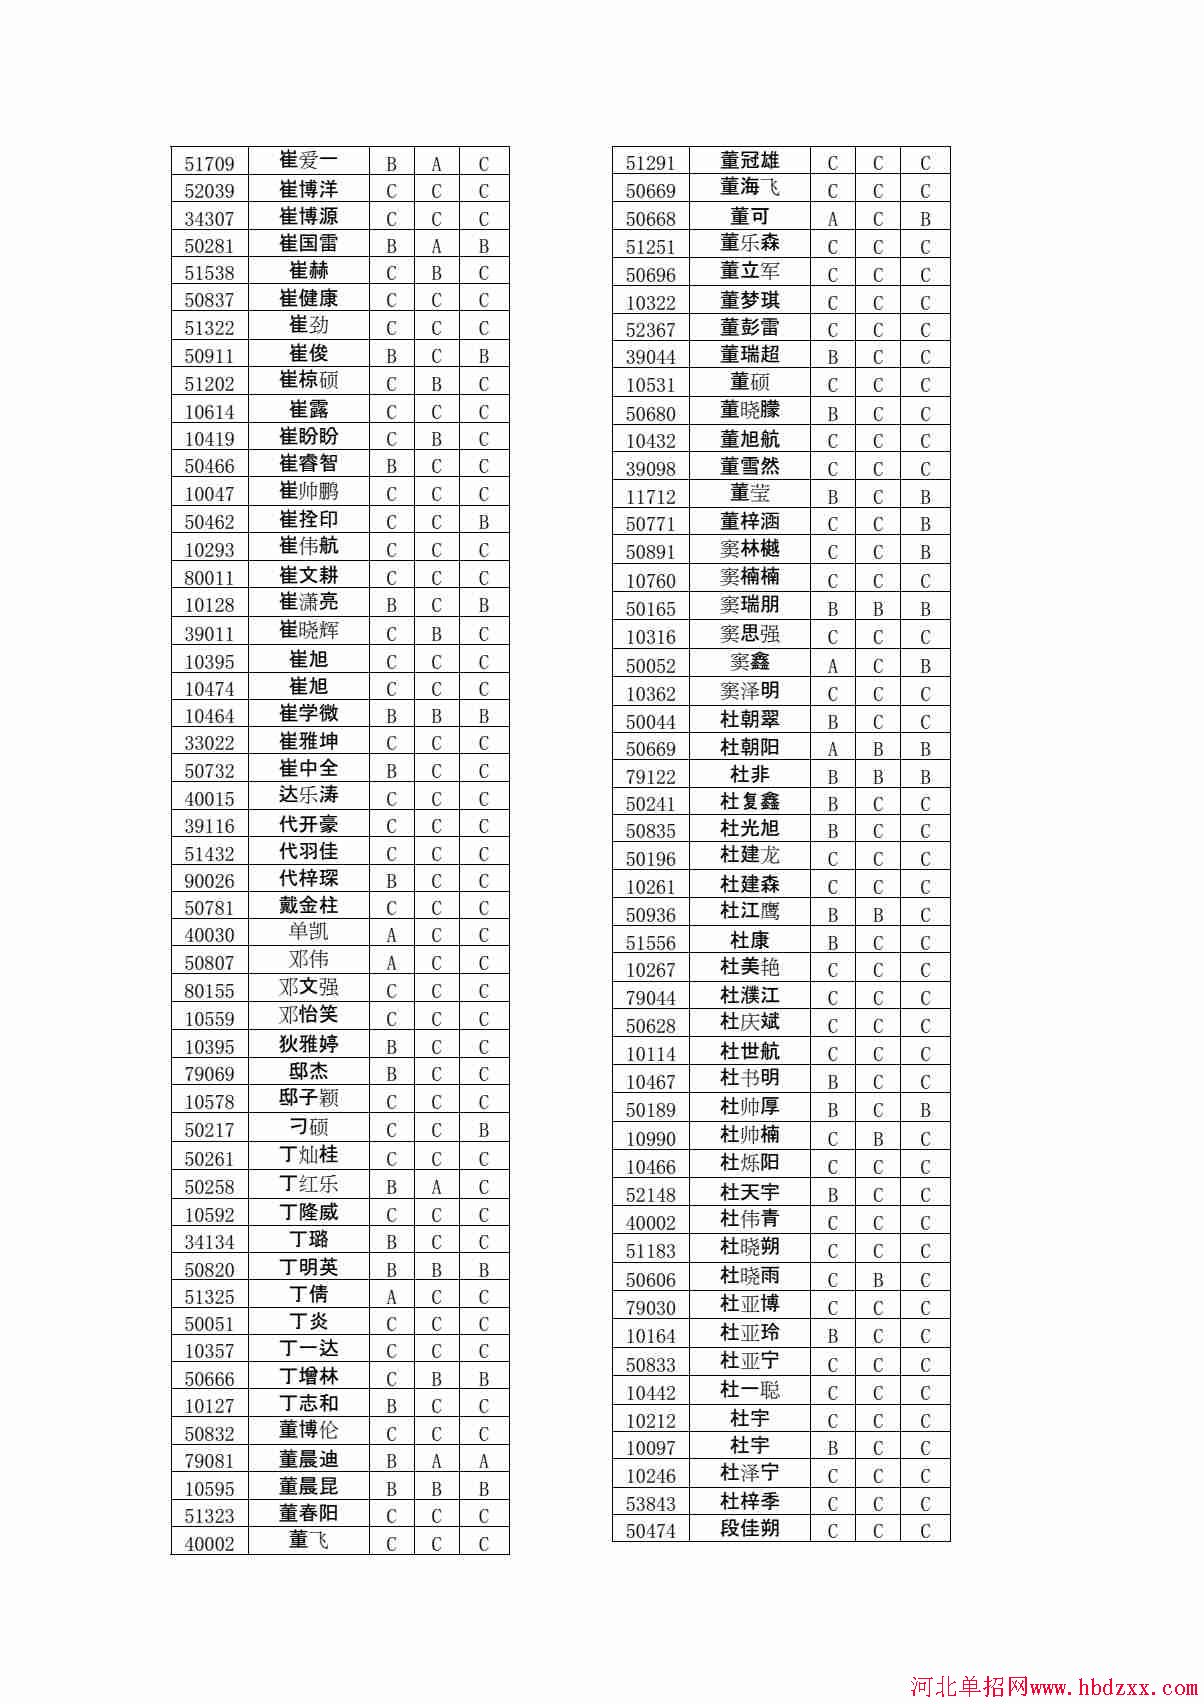 石家庄铁路职业技术学院2015年单独考试招生学问有免考资格考生名单 图2